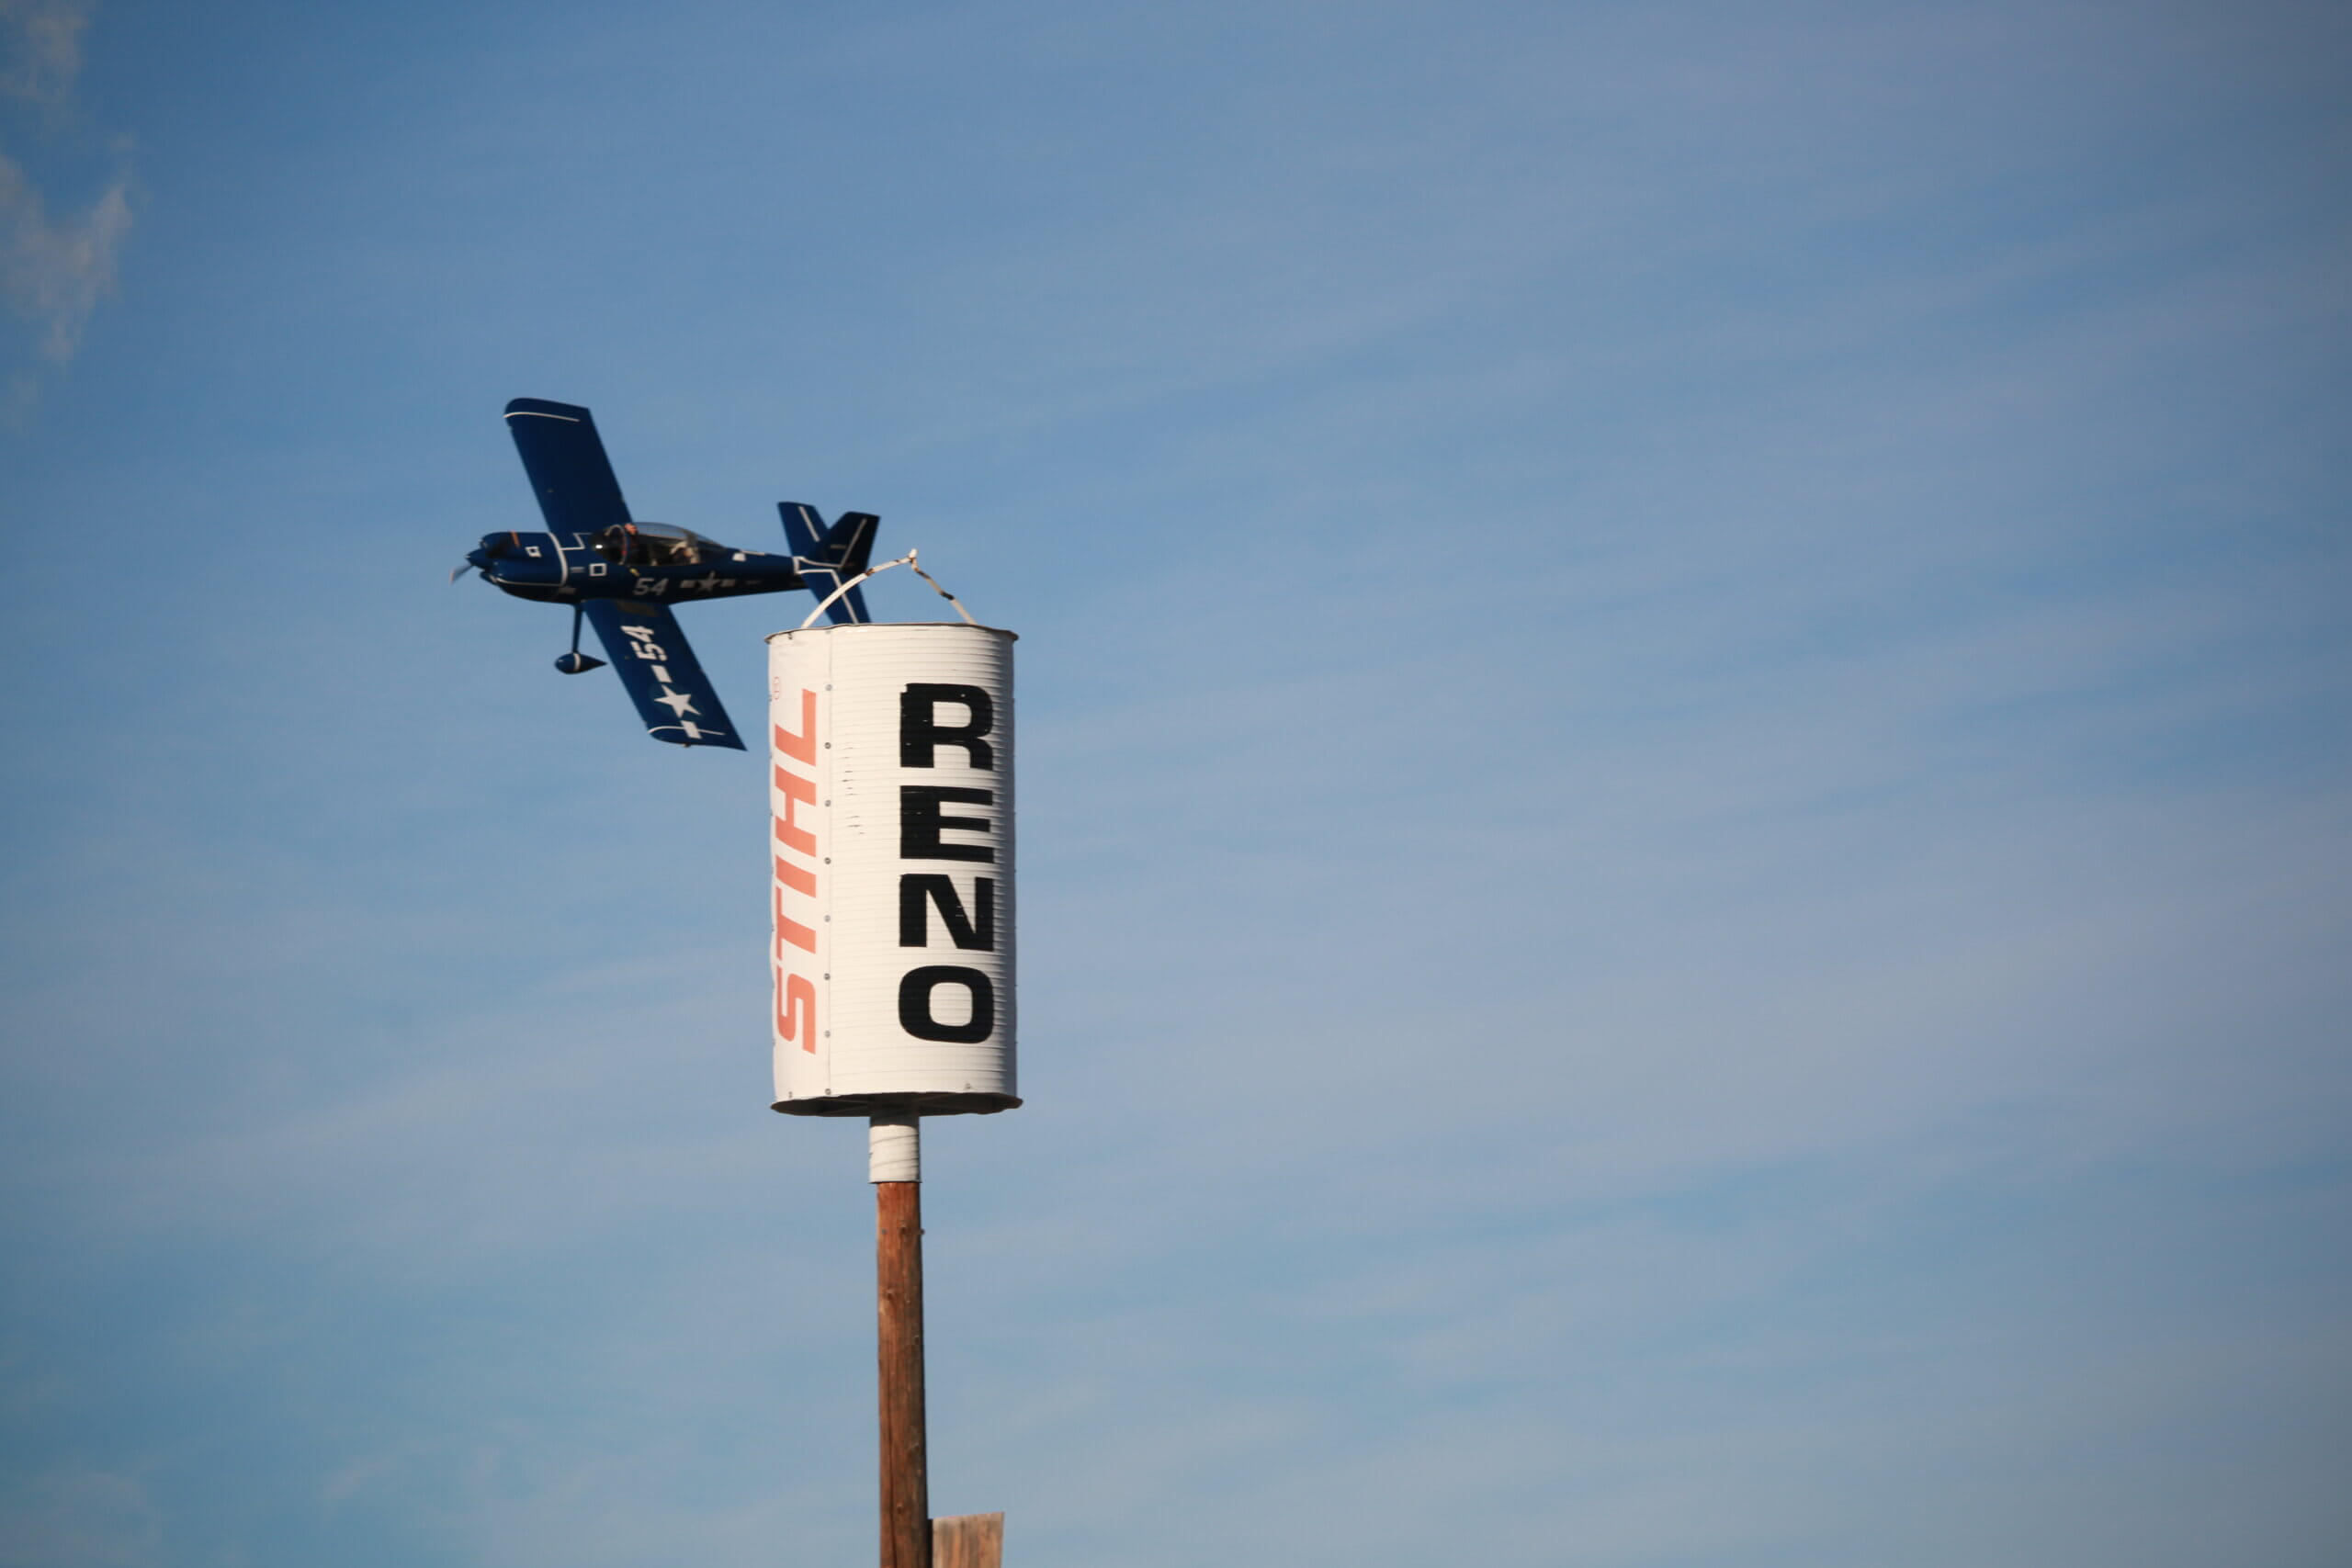 A Sport class plane flies past a Reno pylon